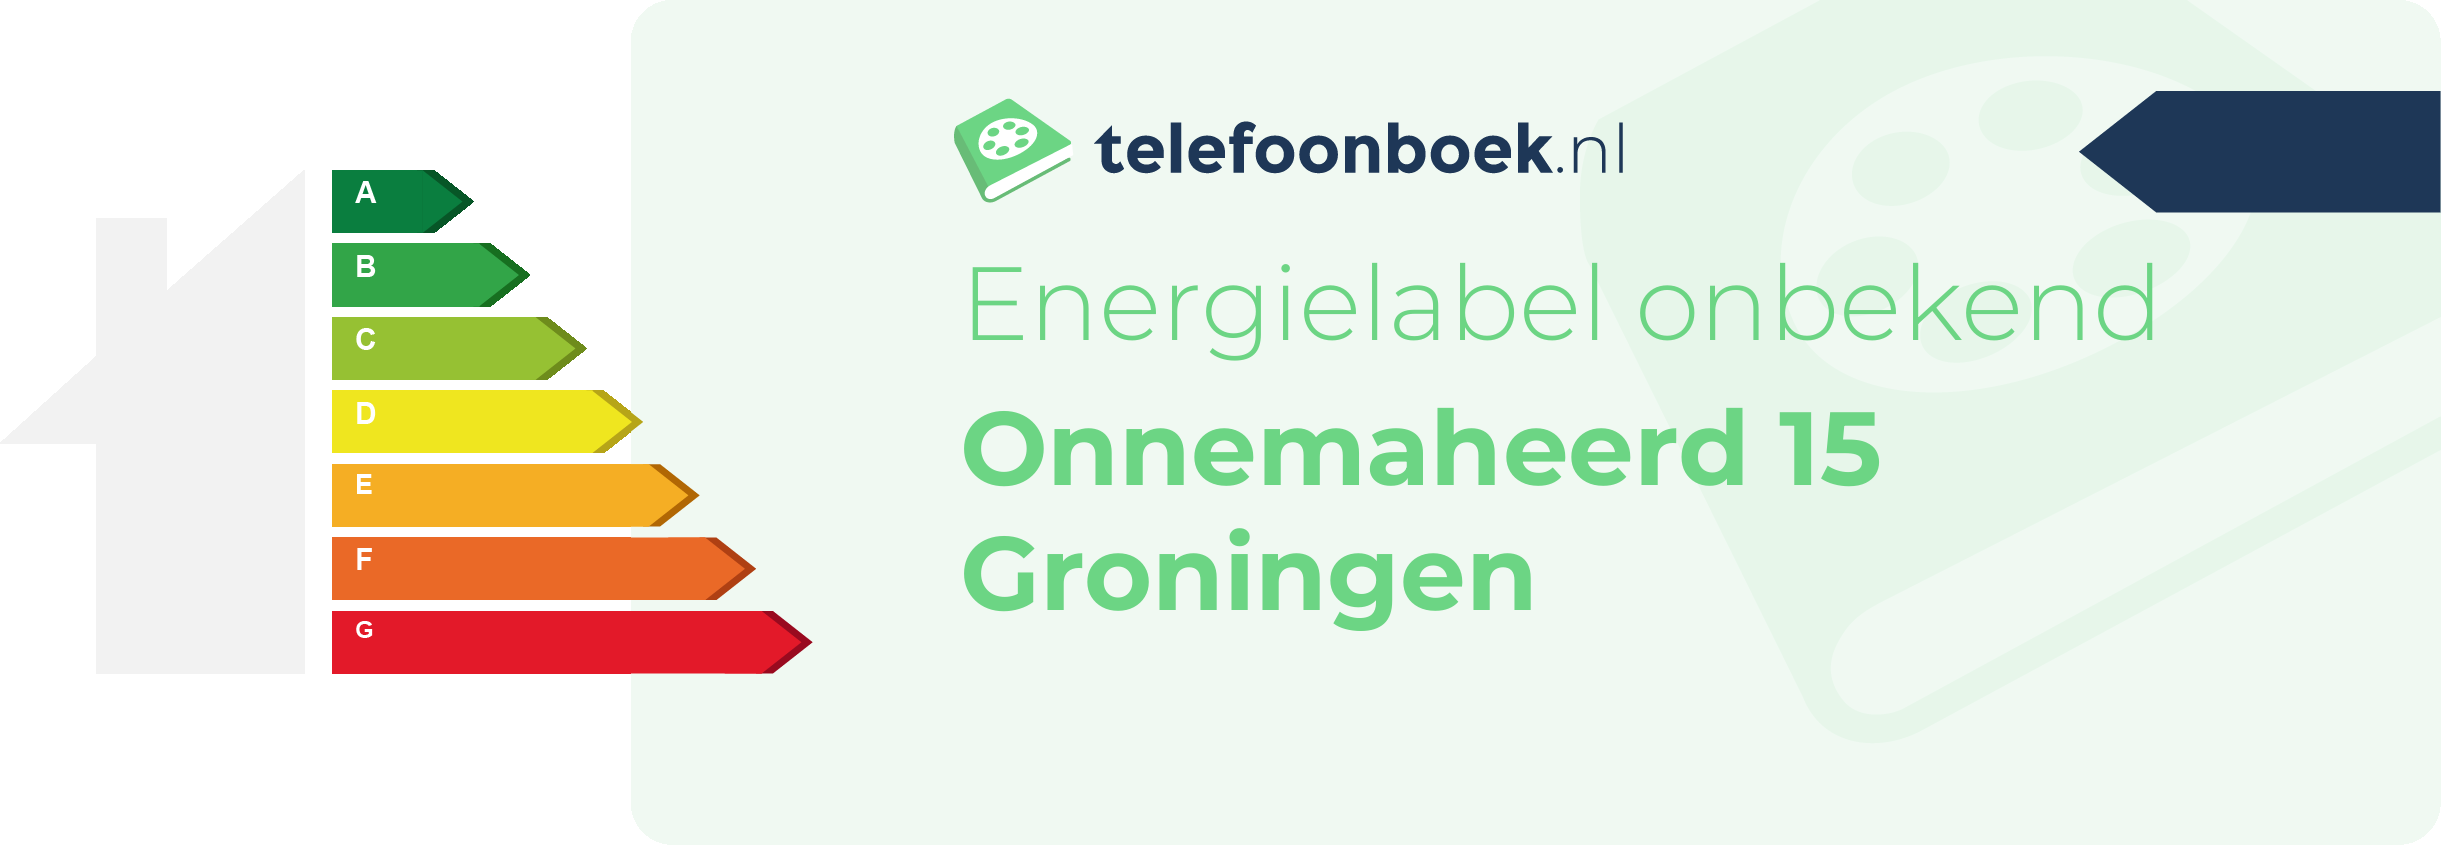 Energielabel Onnemaheerd 15 Groningen